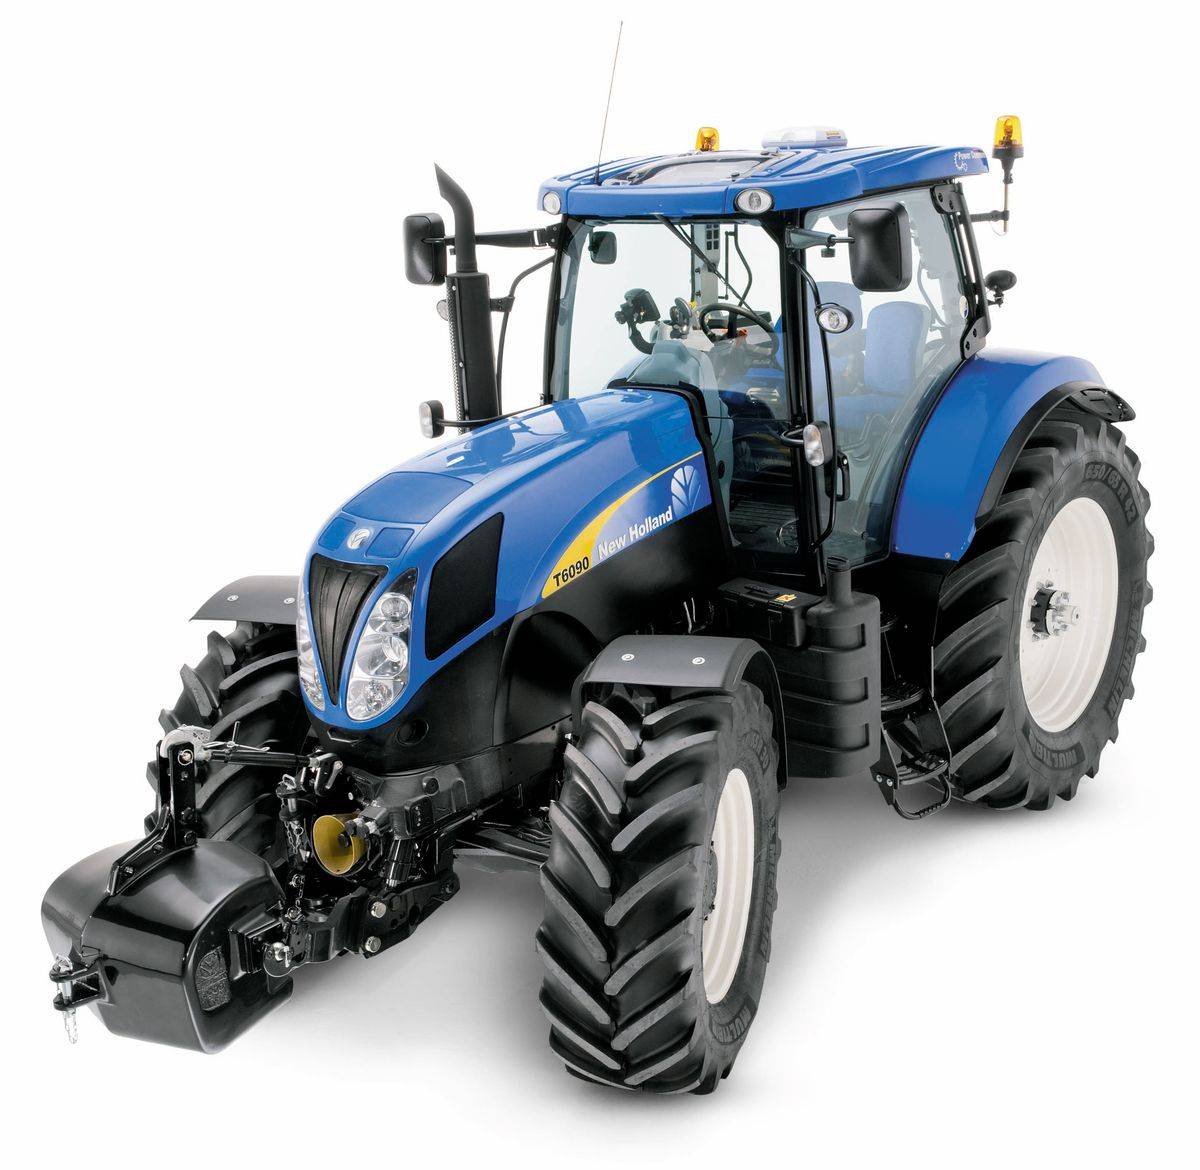 Трактор new holland (нью холланд),модельный ряд — характеристики